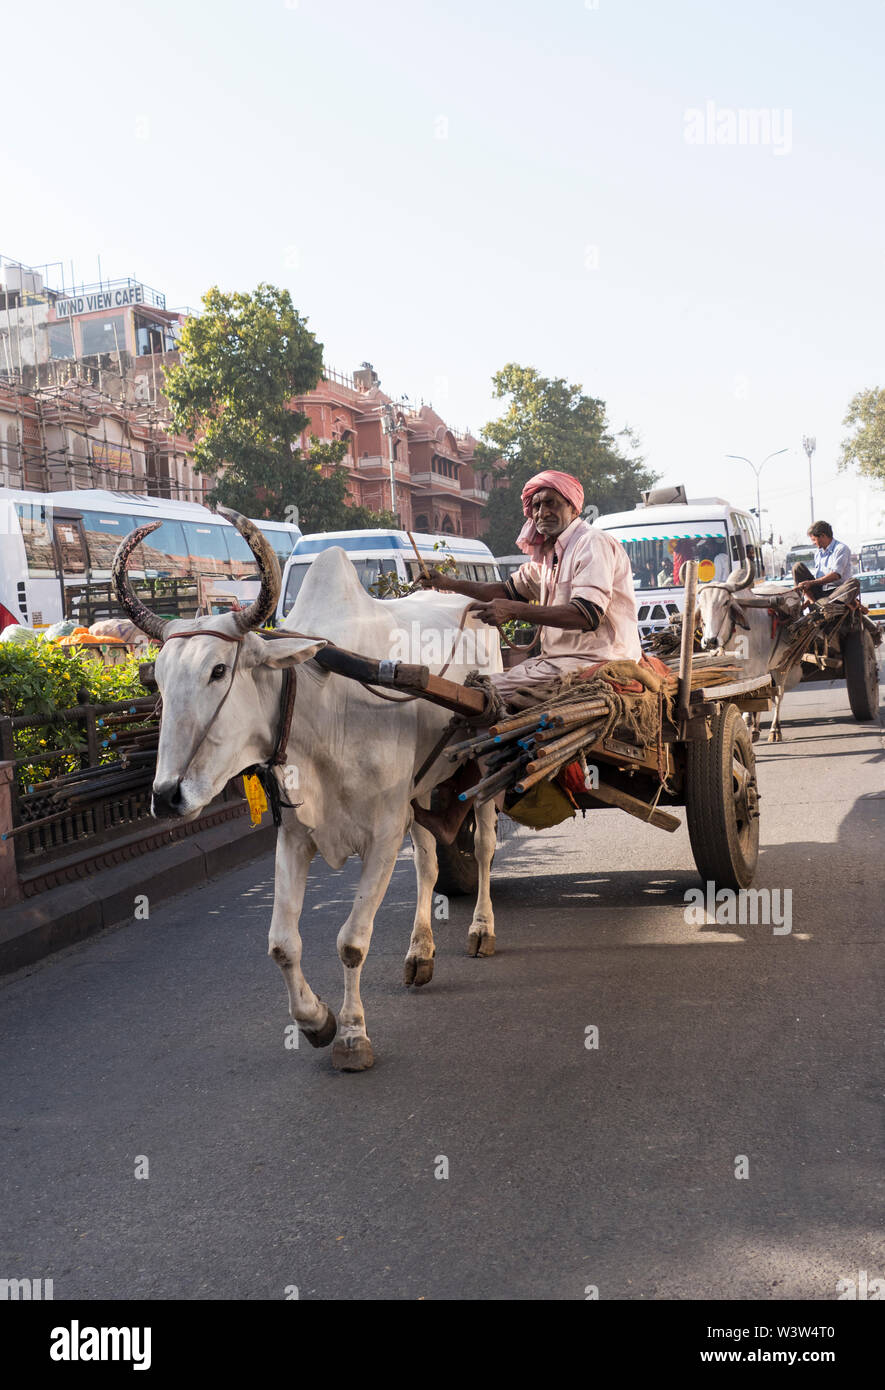 Tradizionale Indiano indù gli uomini con il bianco delle vacche sacre tirando carrelli caricati su una strada trafficata a Jaipur nel Rajasthan in India dove la mucca è sacra. Foto Stock